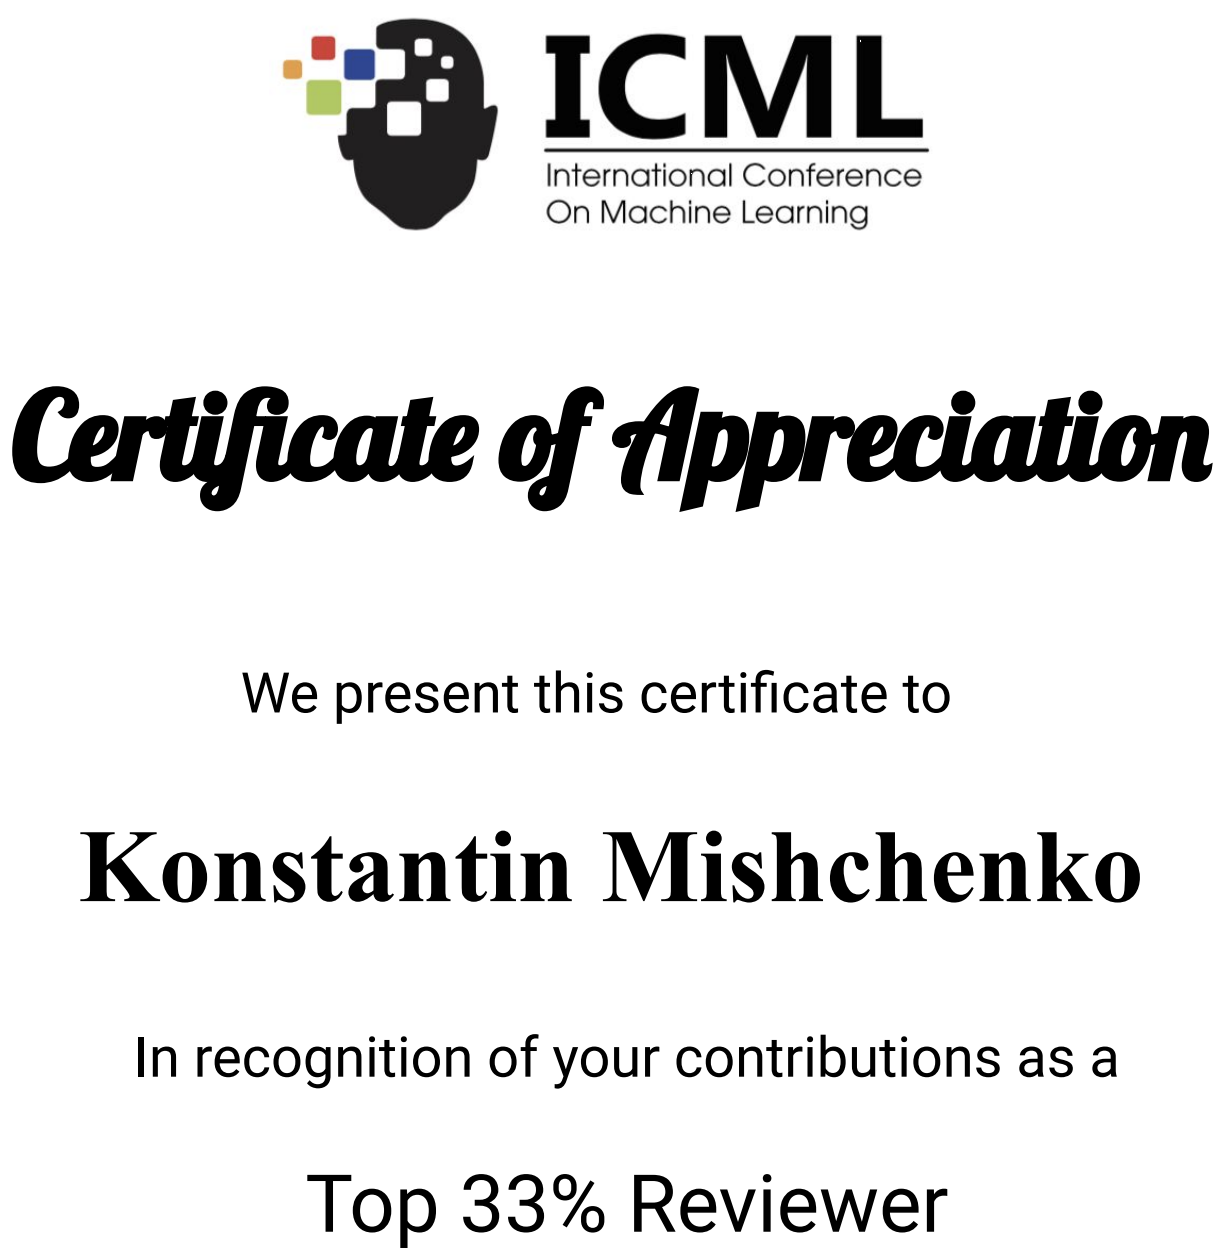 ICML Top Reviewer Konstantin Mishchenko